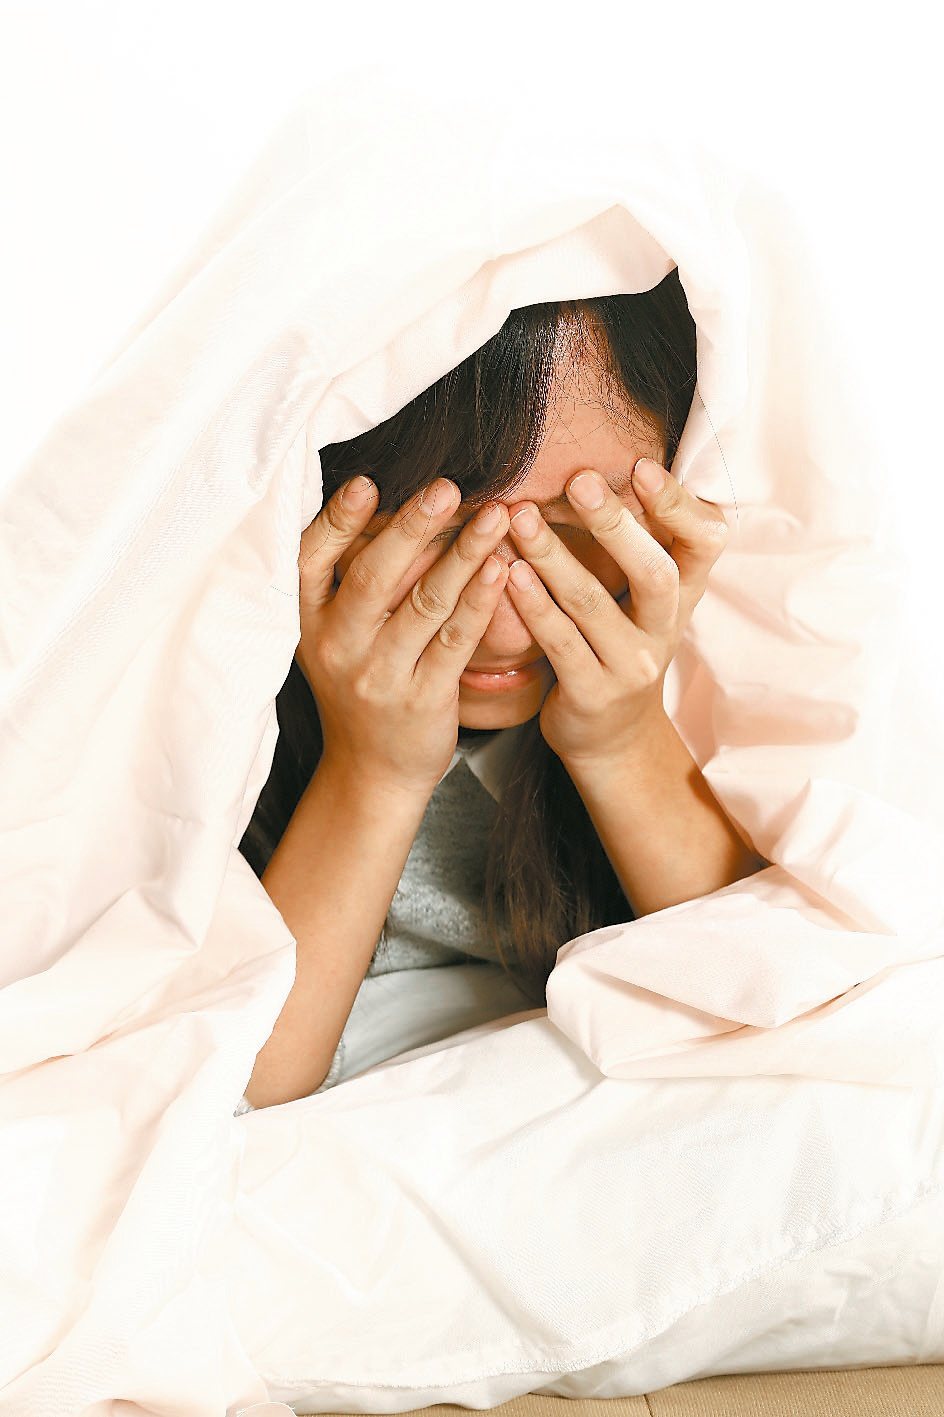 鬼壓床在睡眠醫學上的正式名稱為「睡眠癱瘓」（sleep paralysis），是指在睡覺時突然意識變清醒，而肌肉神經還未醒，就會出現神志清晰，但身體無法動彈的現象。